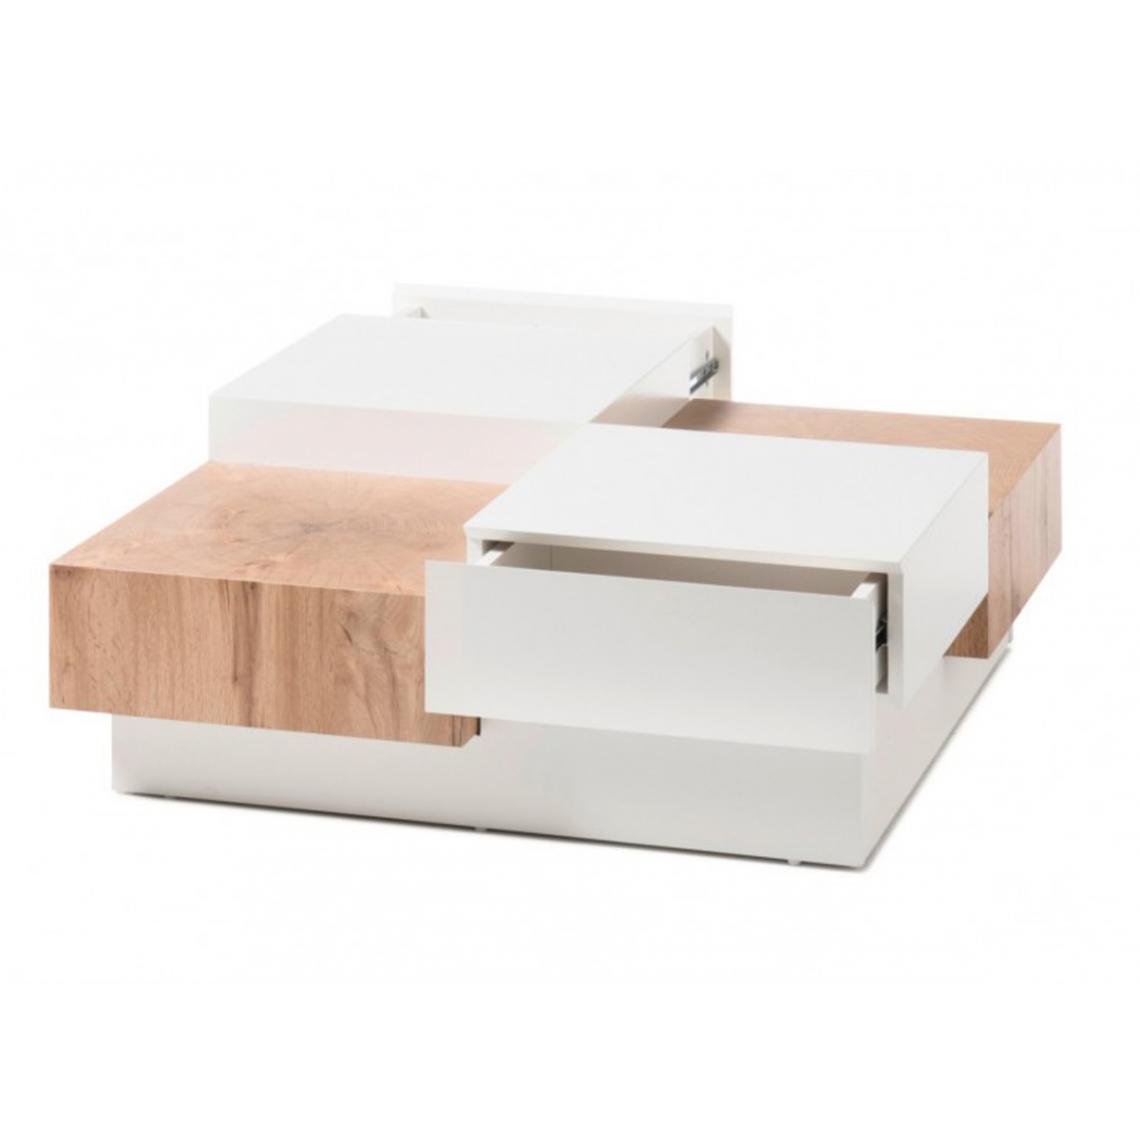 Pegane - Table basse desgin avec rangements en bois coloris chêne/blanc - L.90 x H.33 x P.90 cm - Tables basses